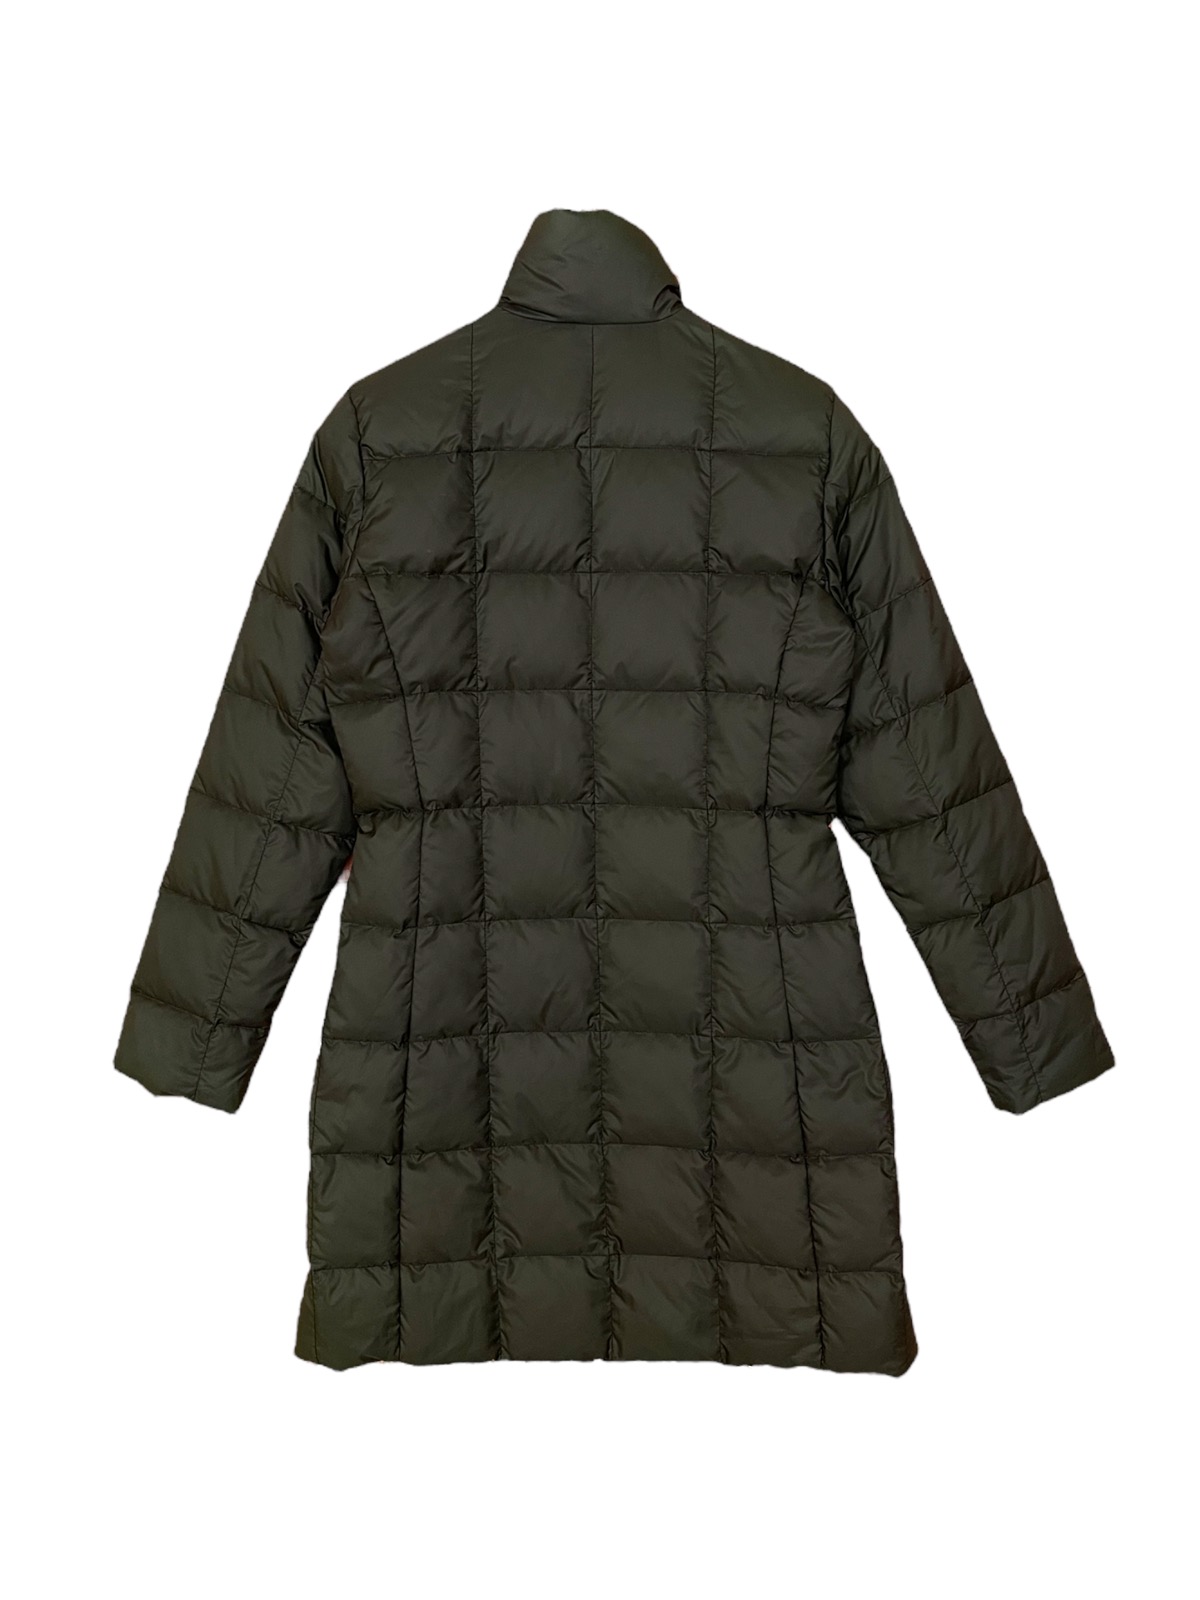 Moncler long puffer jacket reversible down jacket - 4